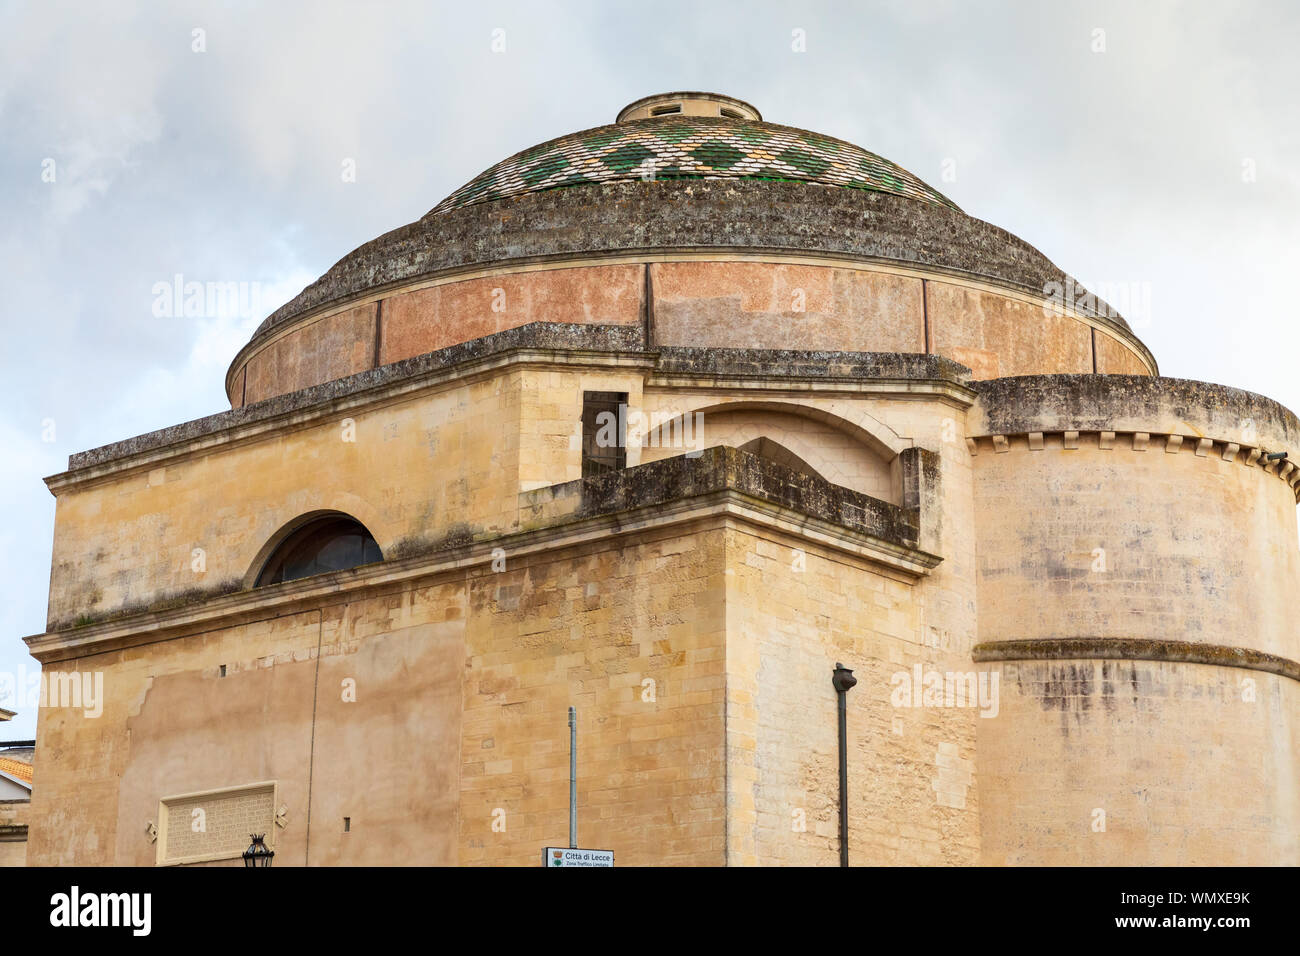 Italy, Apulia, Province of Lecce, Lecce. Dome of the Chiesa di Santa Maria  della Porta Stock Photo - Alamy